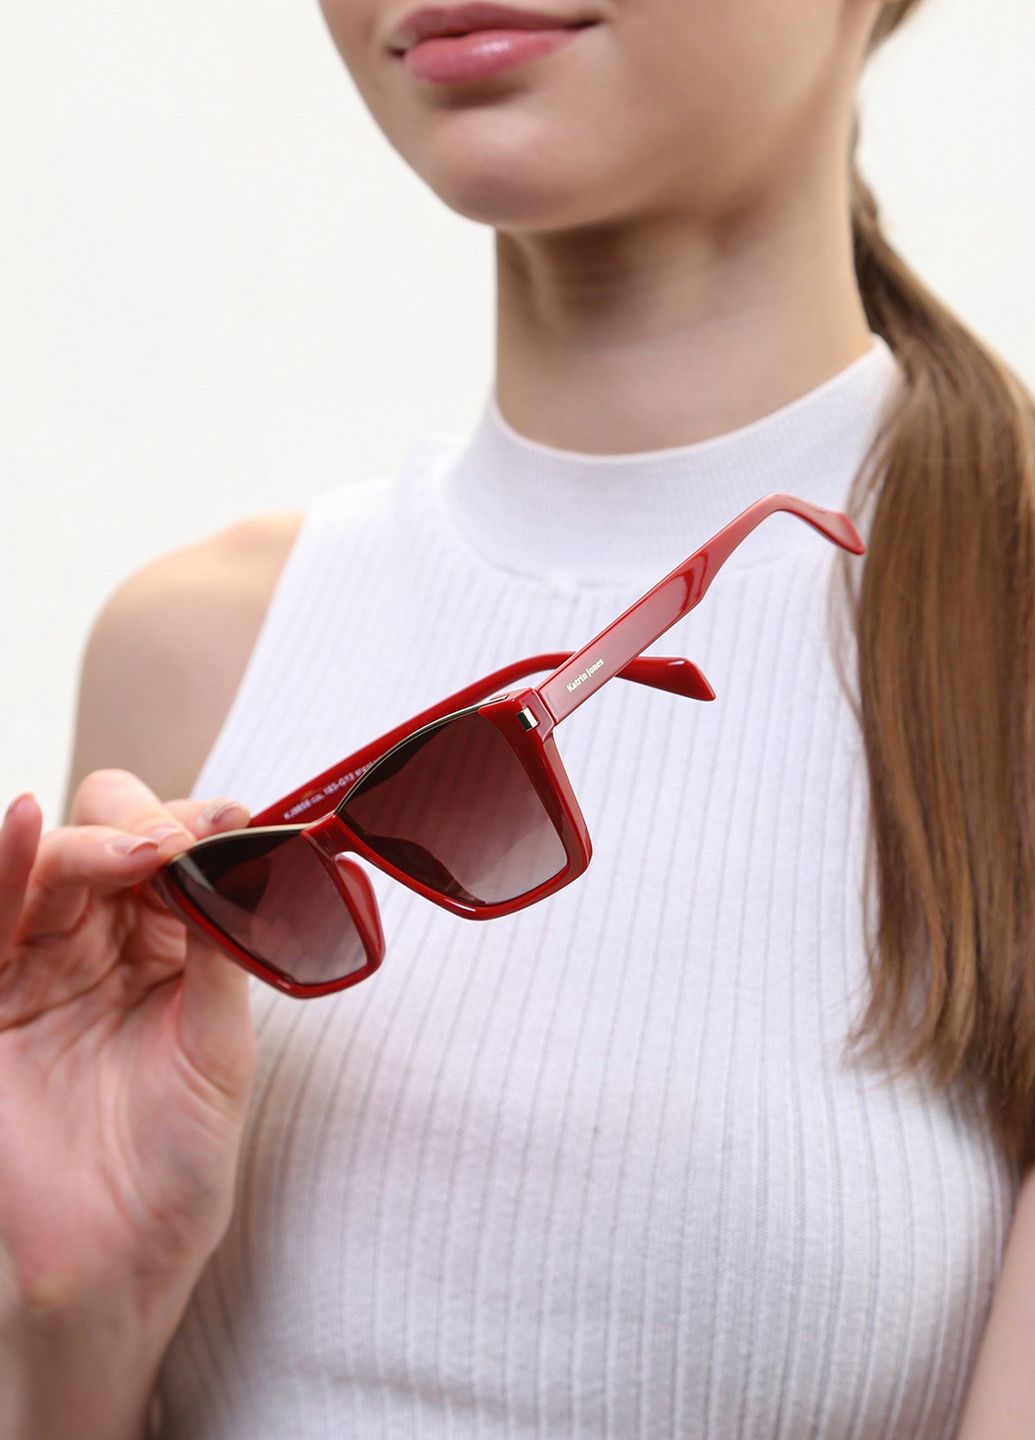 Купити Жіночі сонцезахисні окуляри Katrin Jones з поляризацією KJ0858 180042 - Червоний в інтернет-магазині